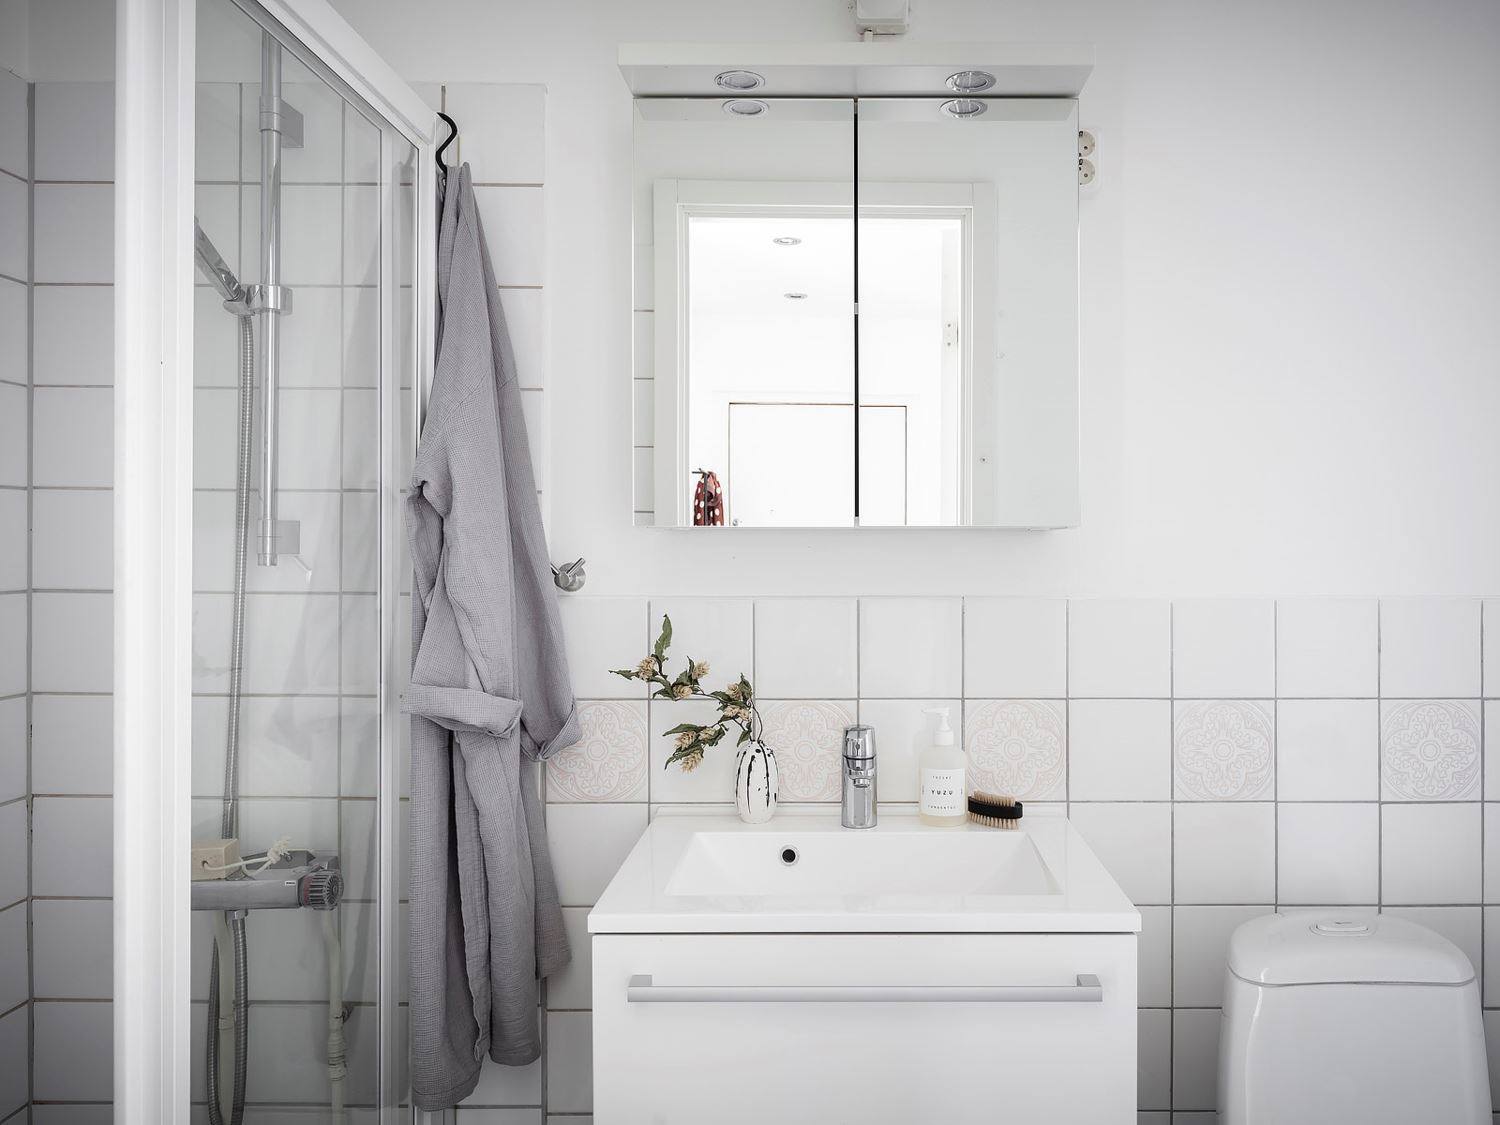 Nếu phòng bếp lựa chọn gam màu gỗ và đen làm bật lên cá tính mạnh mẽ thì phòng tắm lại nhẹ nhàng, thuần khiết với duy nhất gam màu trắng. Phía trên bồn rửa là chiếc tủ lưu trữ cửa ốp gương vừa phản chiếu ánh sáng vừa 'nhân đôi' không gian.